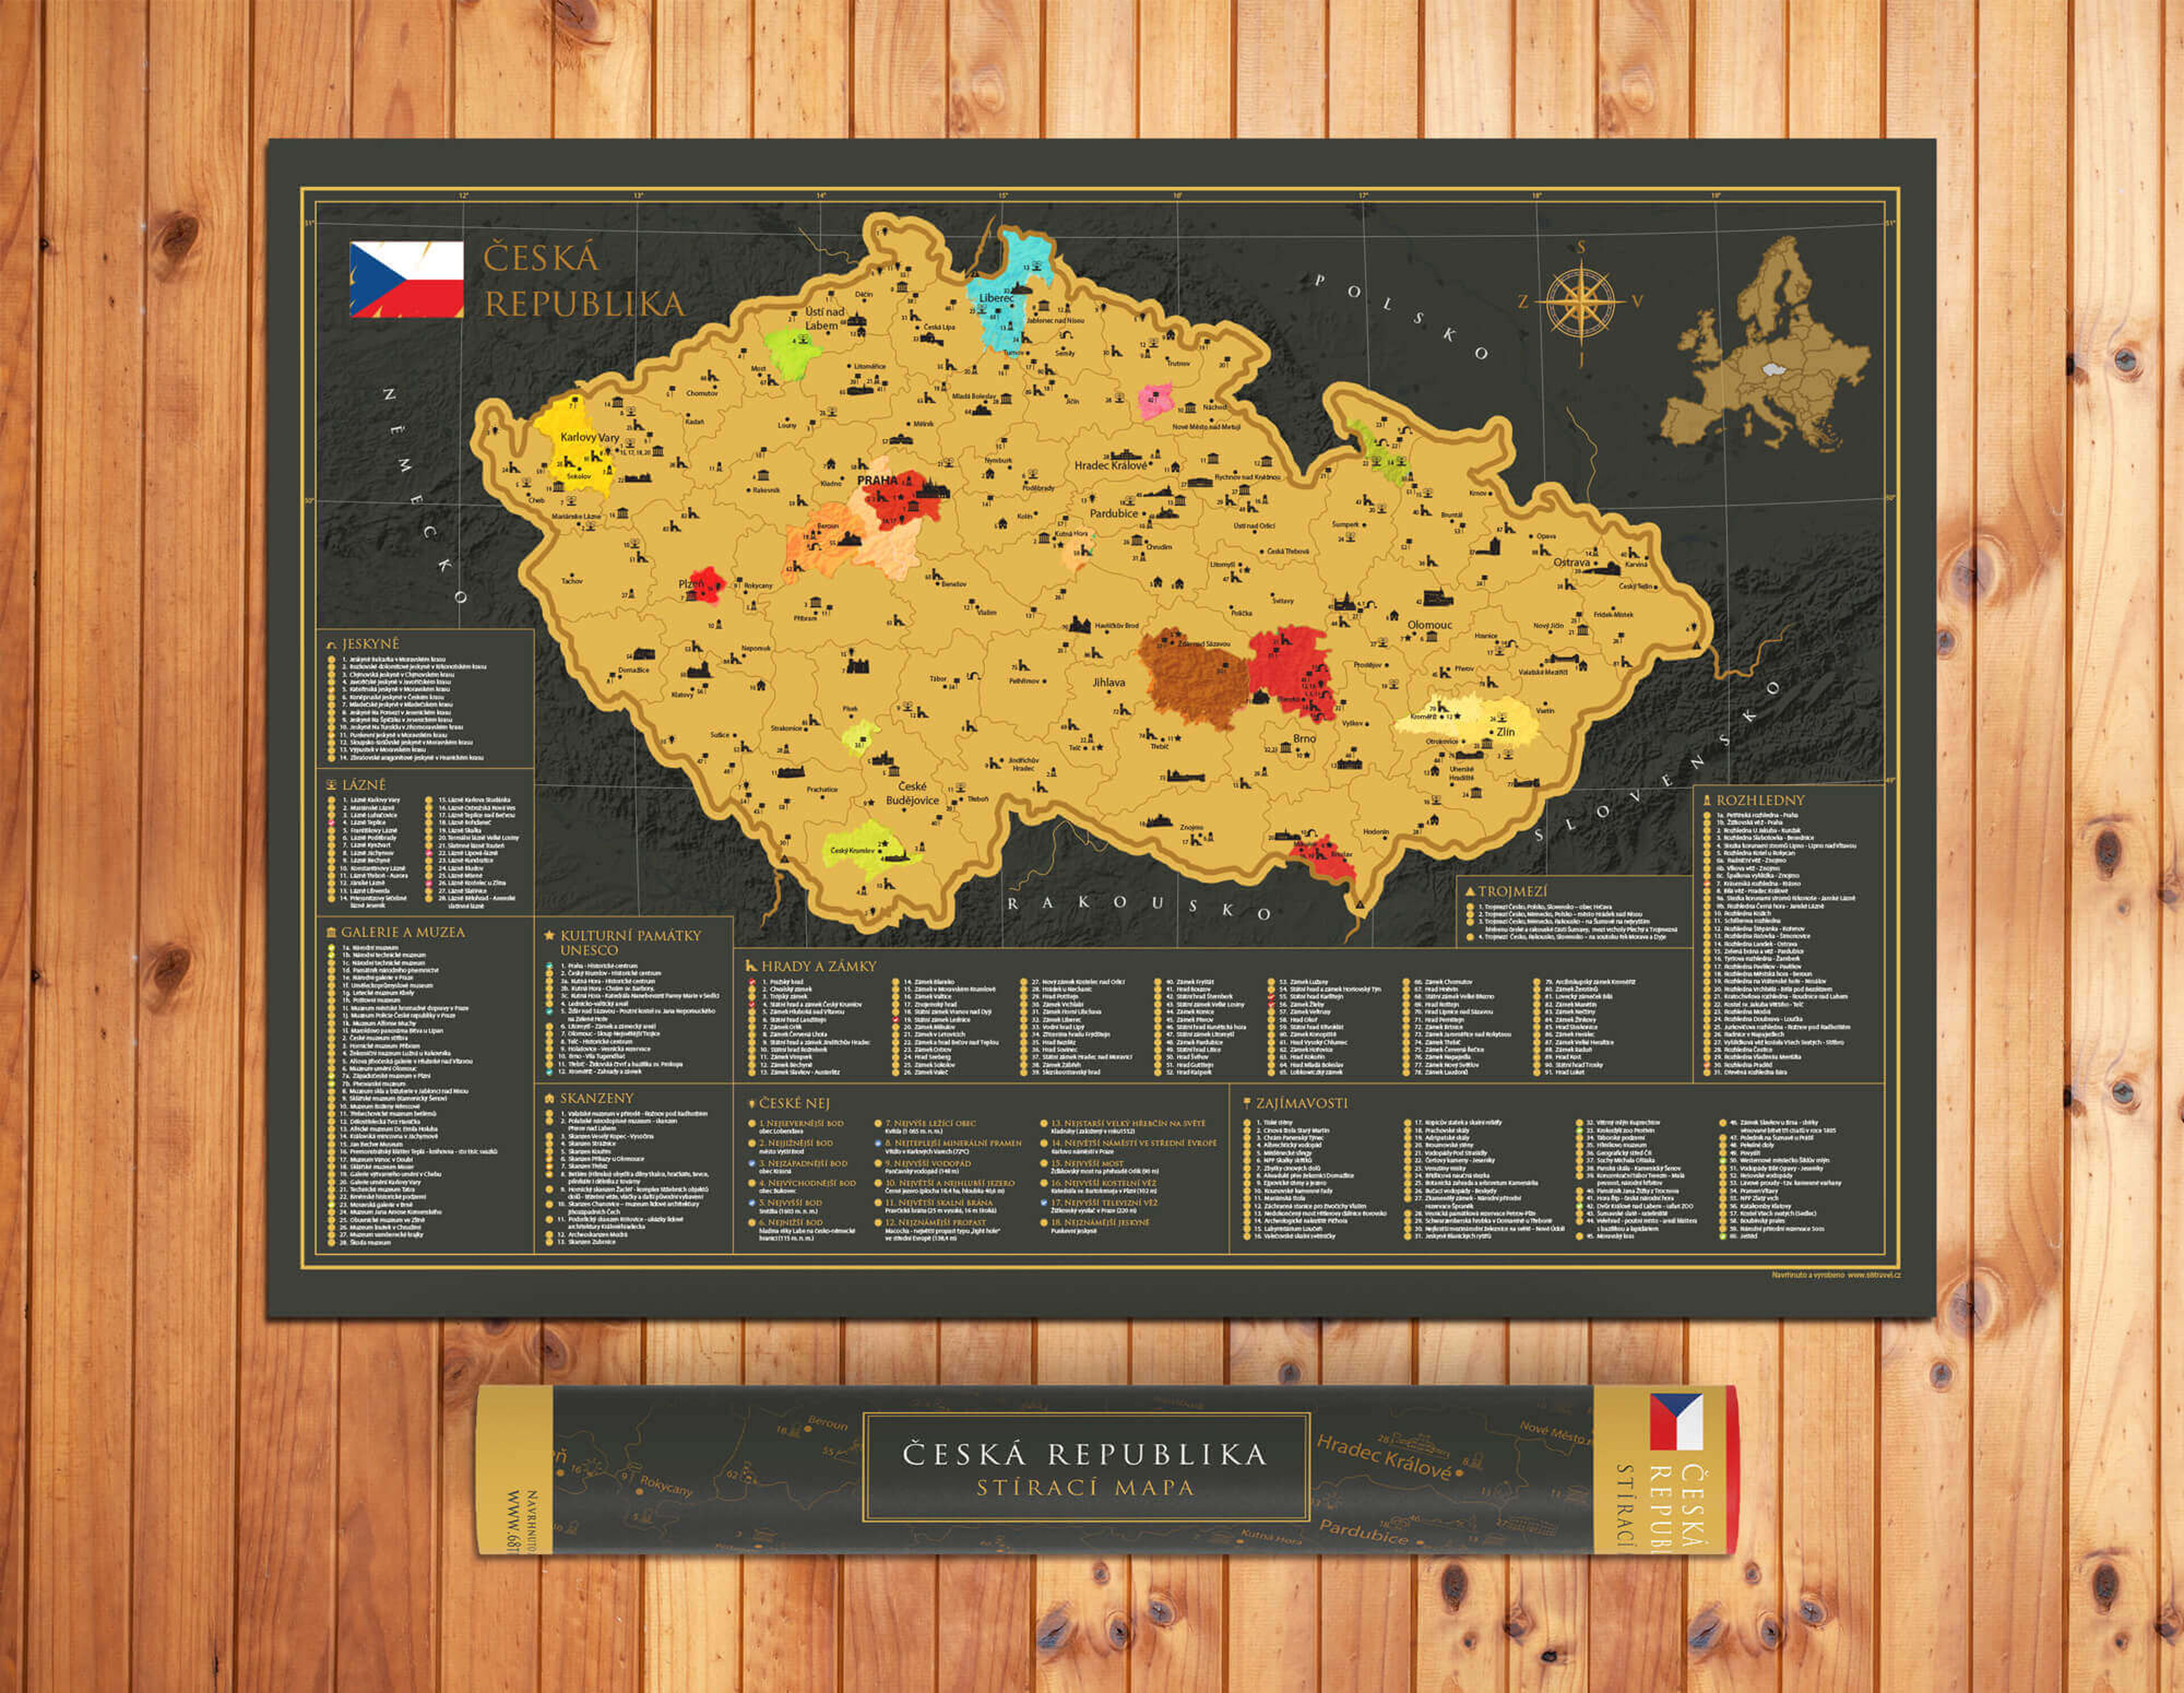 Scratch off Map of the Czech Republic